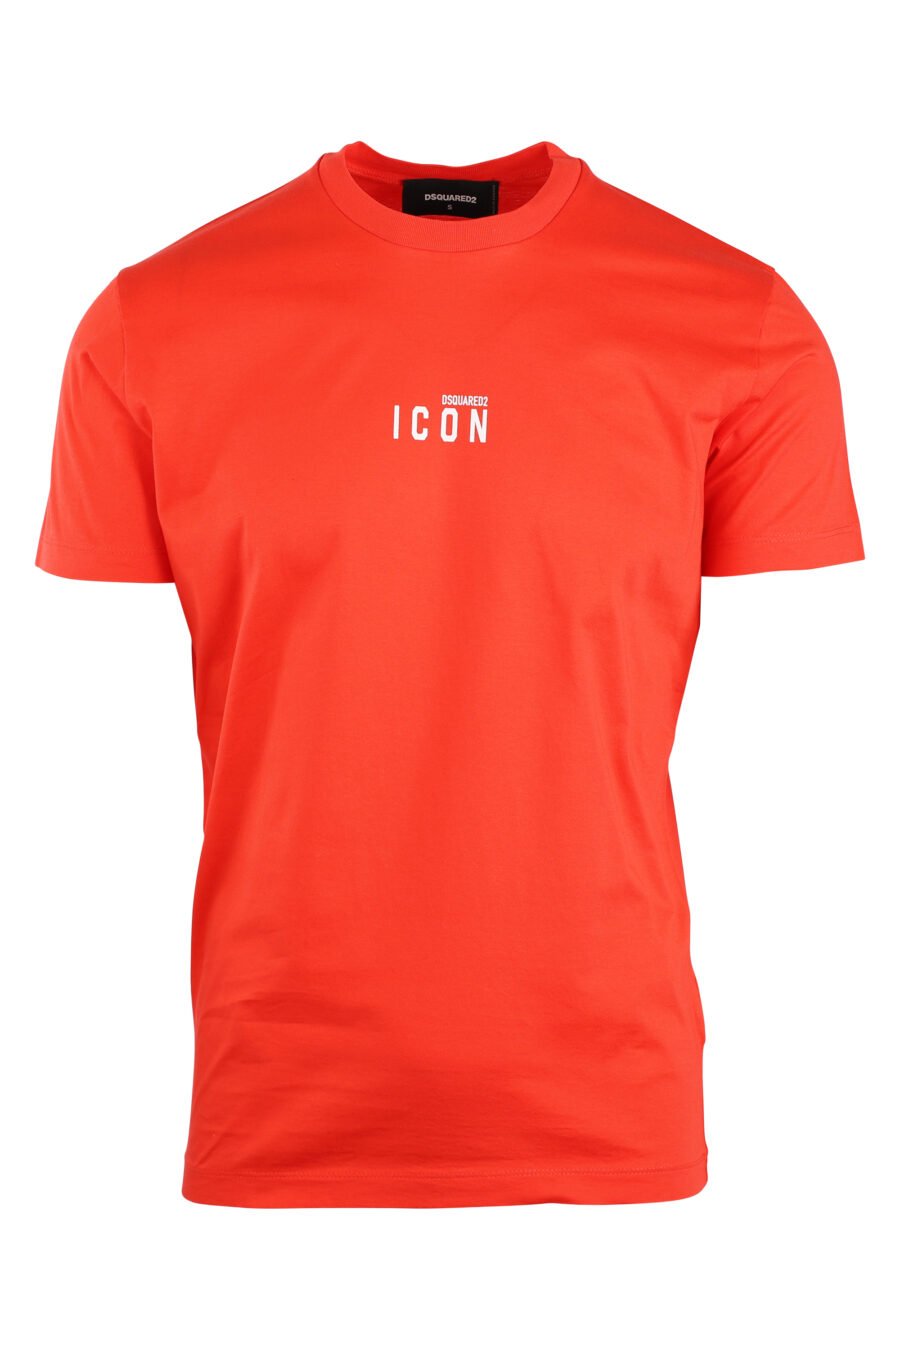 T-shirt orange avec minilogue "icon" - IMG 8926